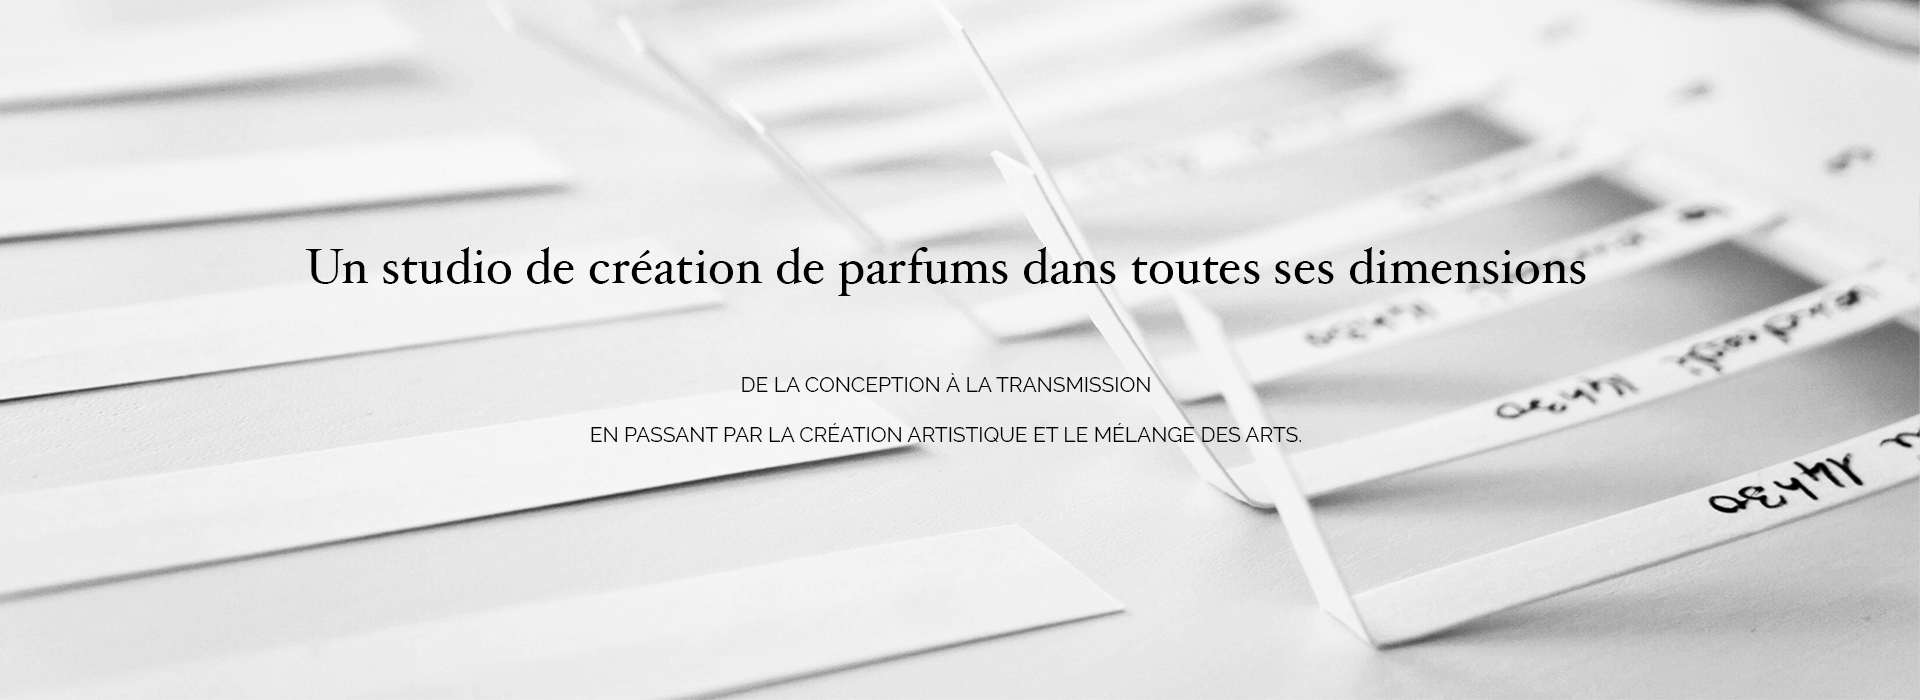 Les-Olfactines-studio-de-création-de-parfum-slider-1